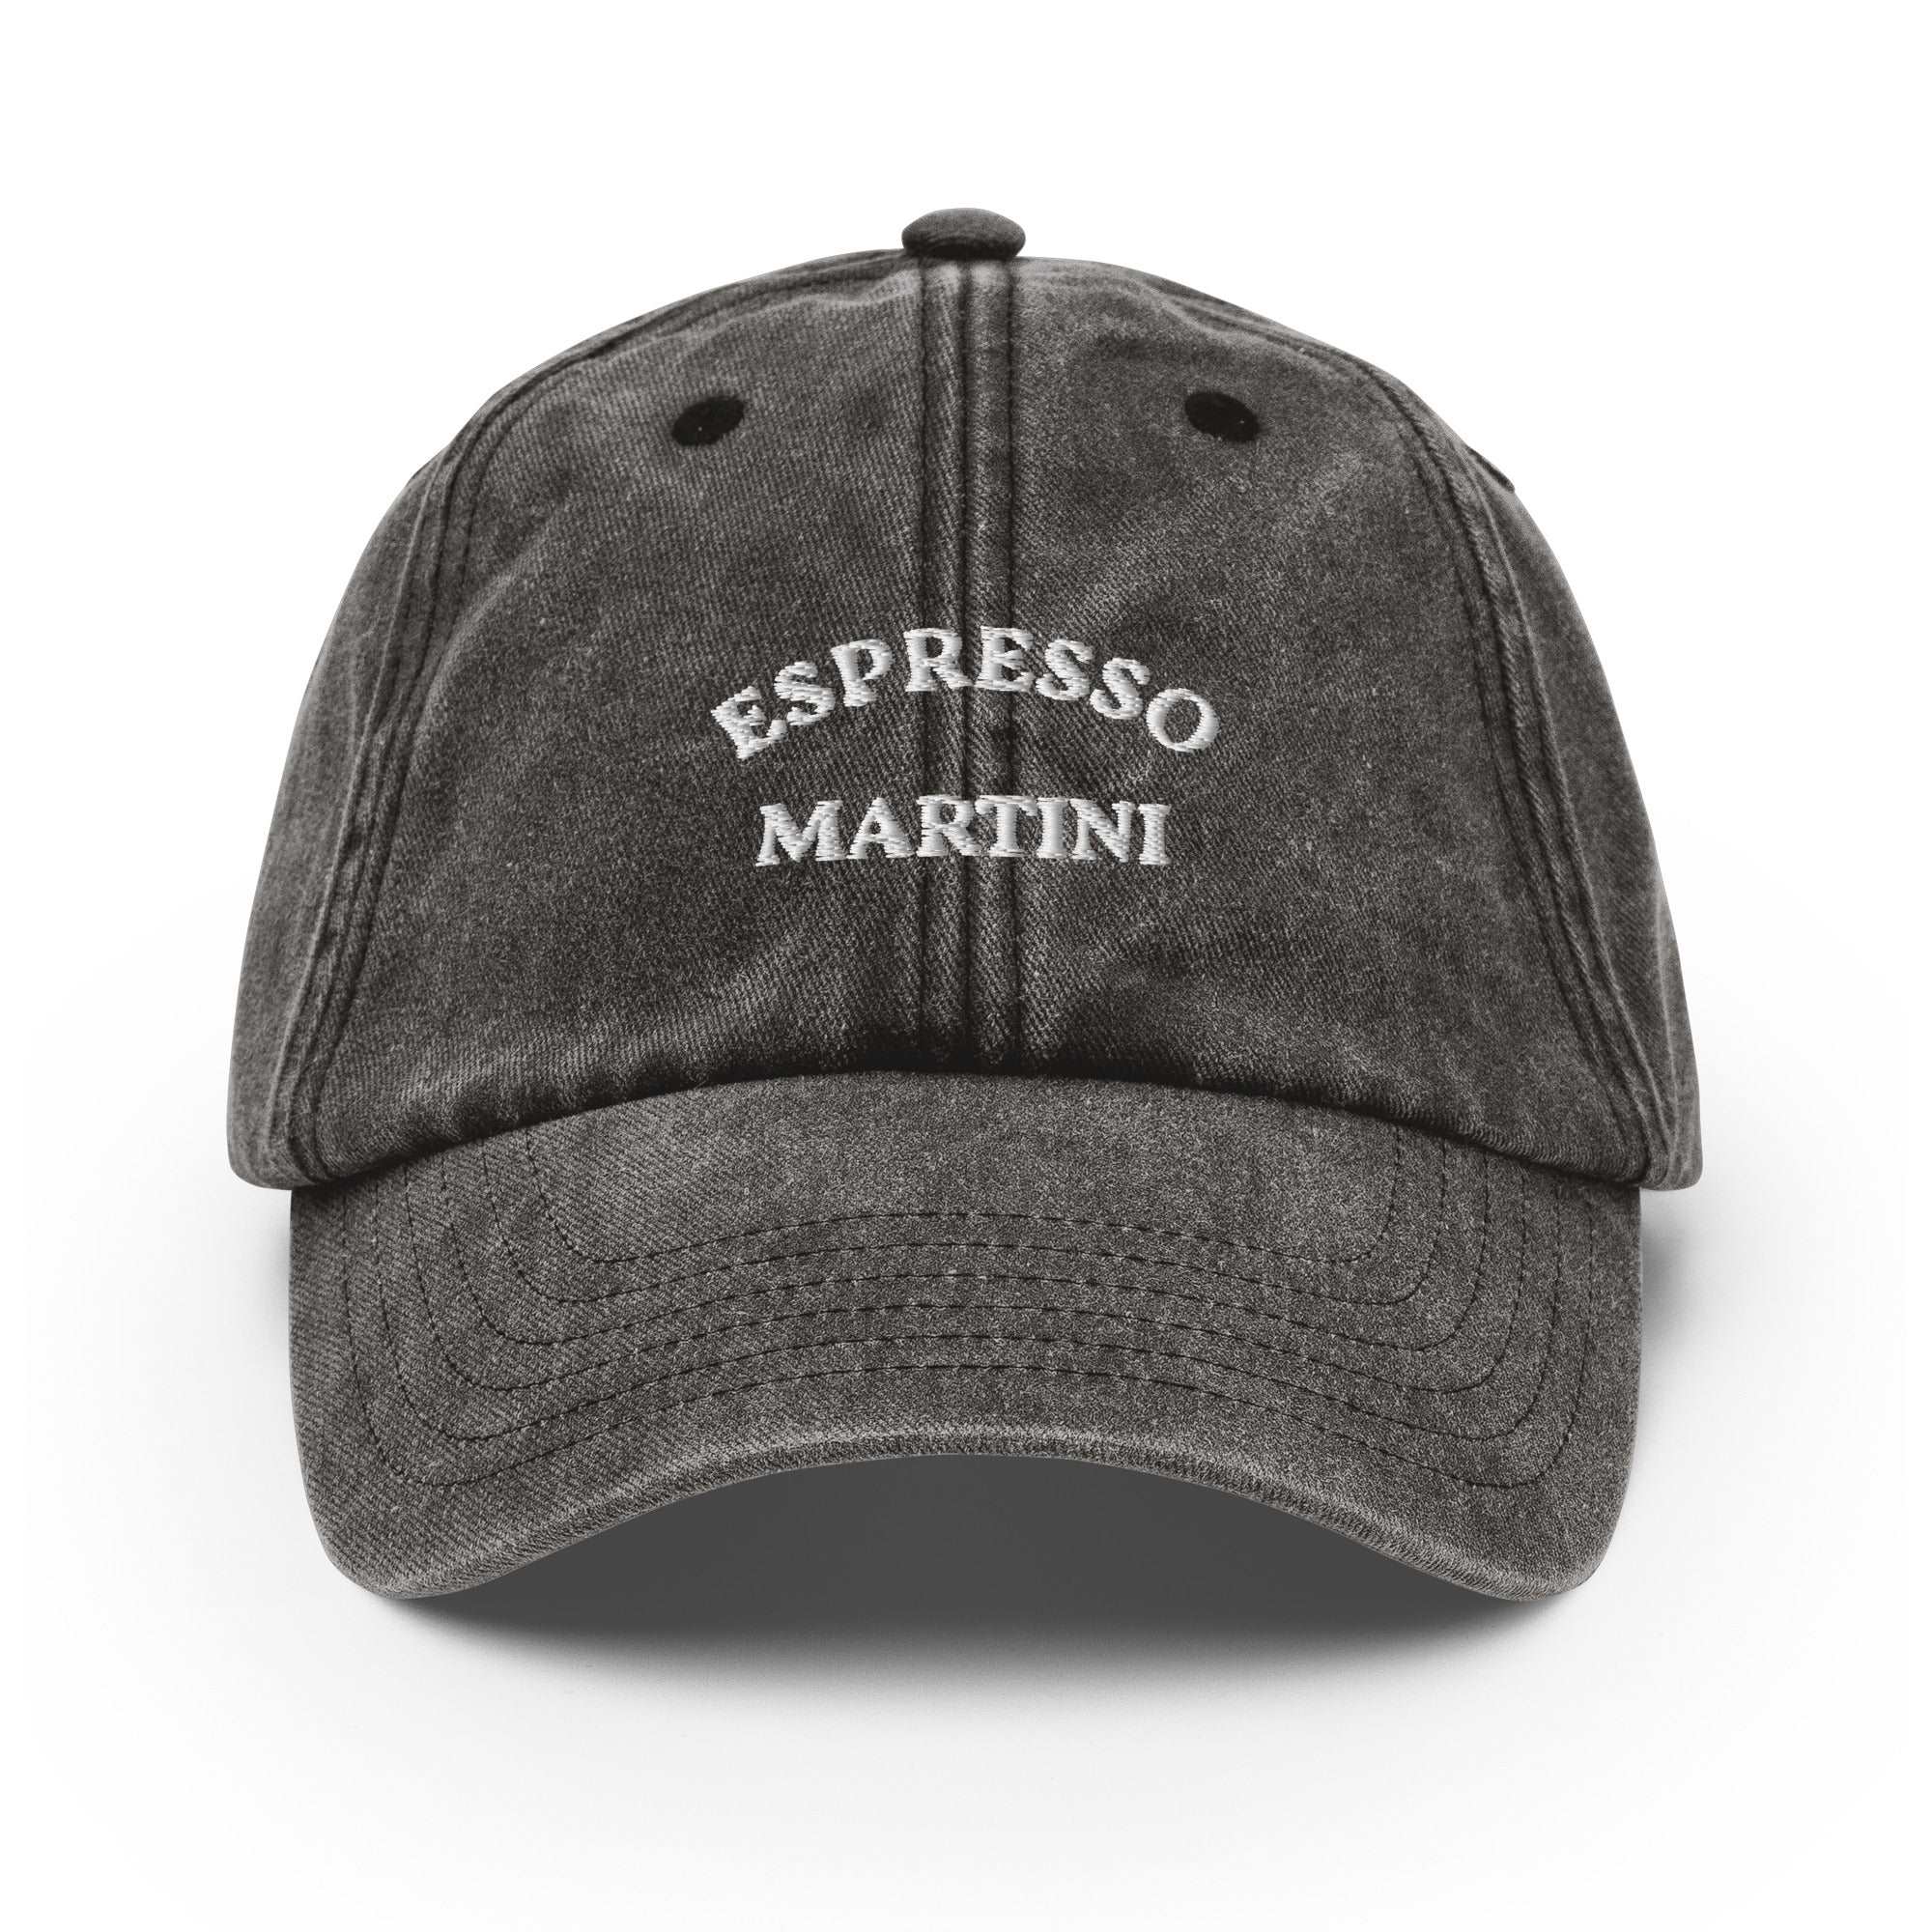 Espresso Martini Vintage Cap - The Refined Spirit